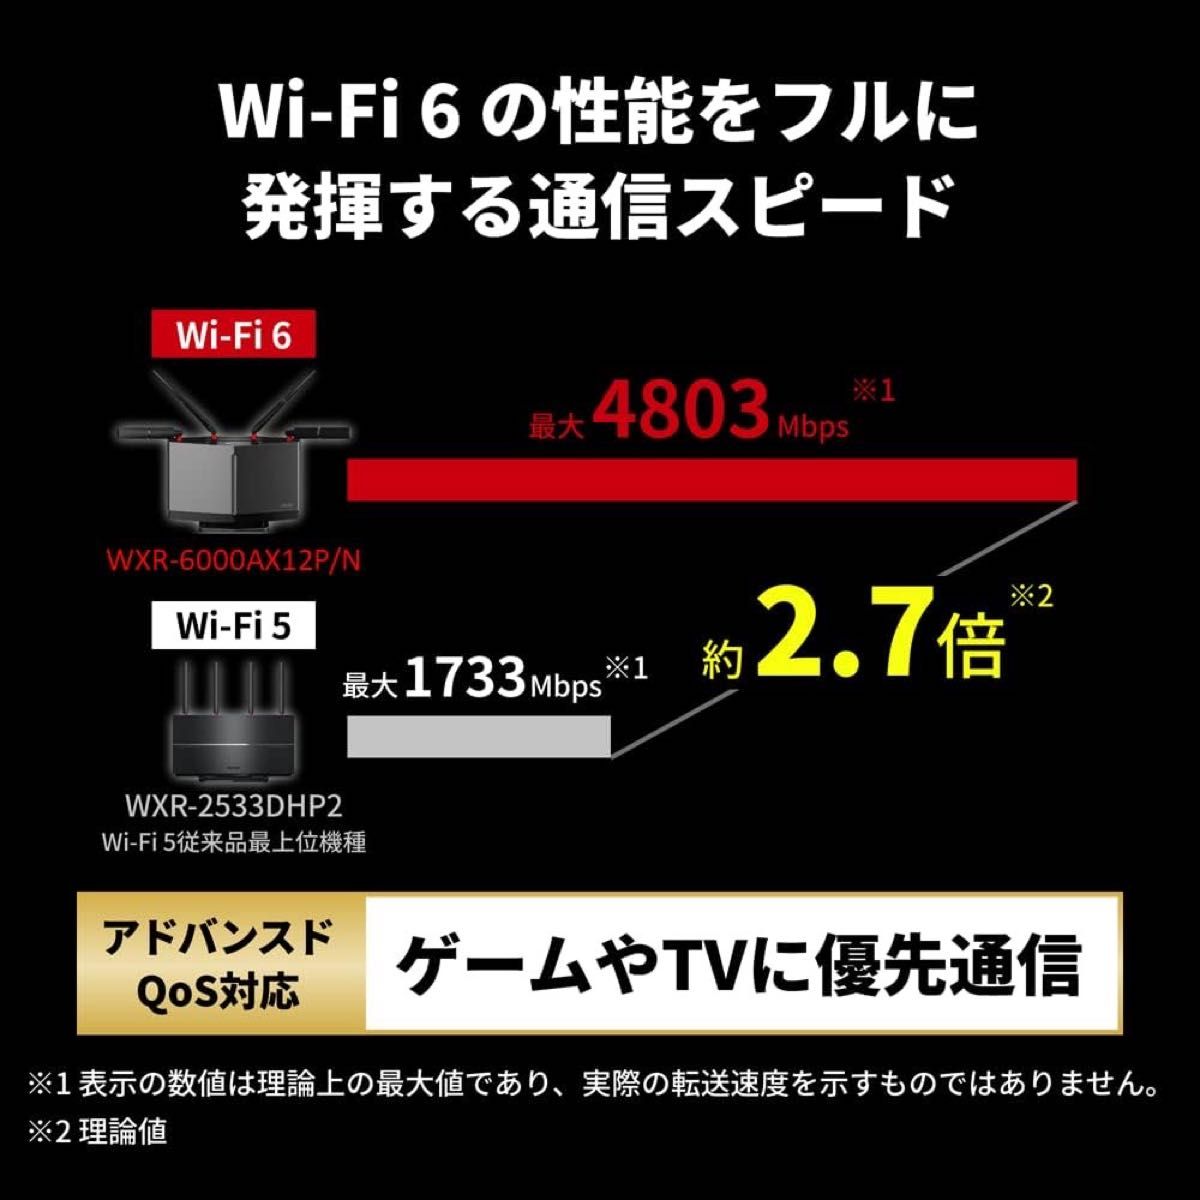 WiFi ルーター無線LAN Wi-Fi 6 11ax / 11ac 4803+1147MbpsWXR-6000AX12P